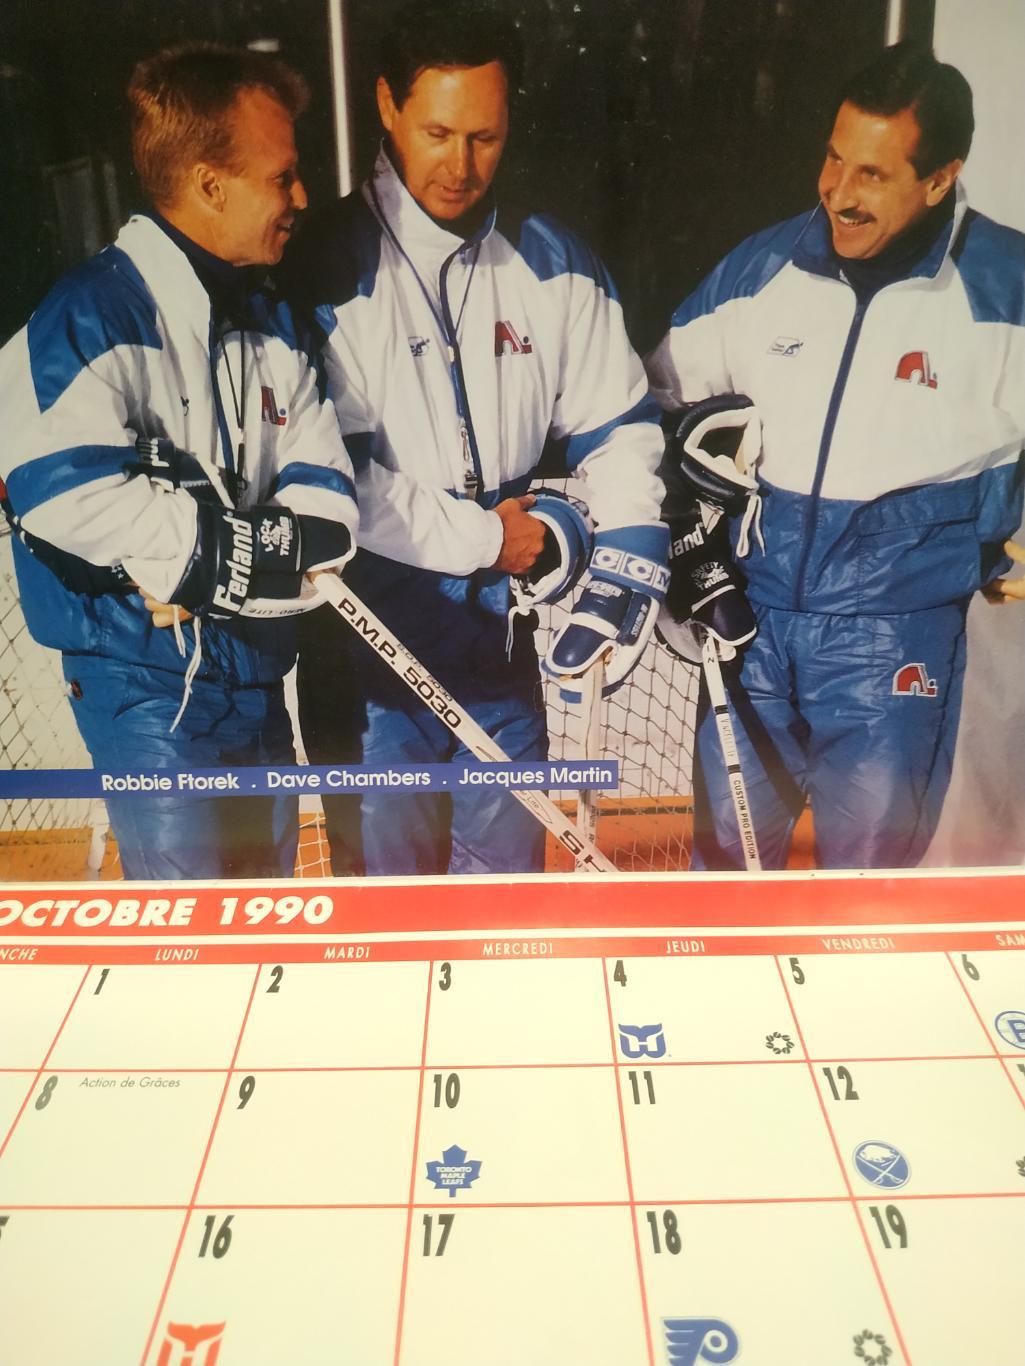 ХОККЕЙ КАЛЕНДАРЬ НХЛ КВЕБЕК НОРДИКС 1990-91 NHL LES NORDIQUES OFFICIAL CALENDAR 1